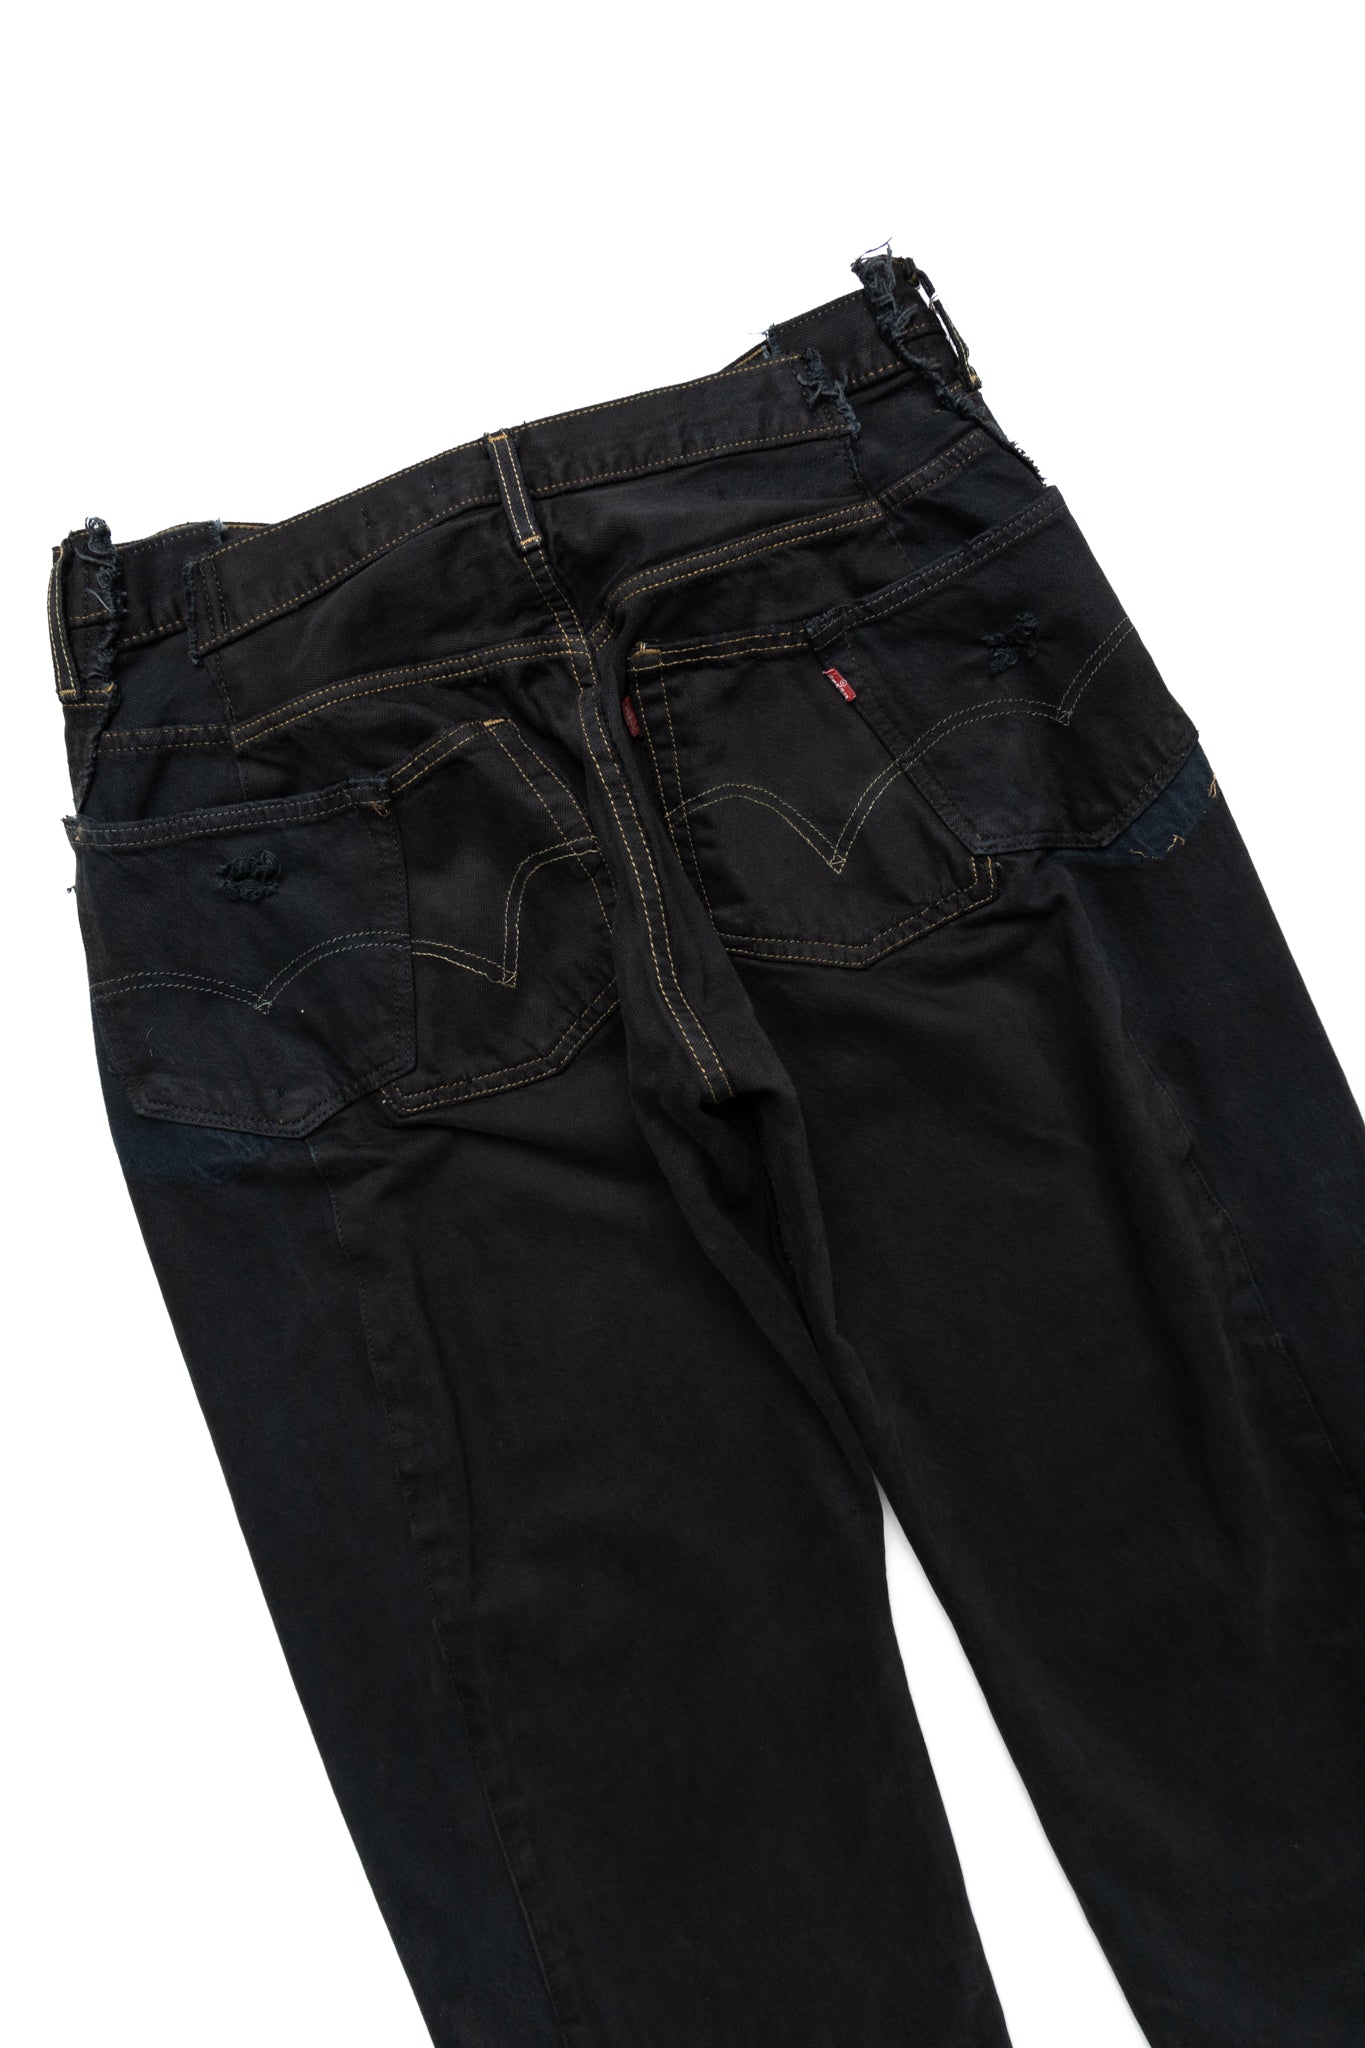 Zip Baggy Jeans Black - L (1)